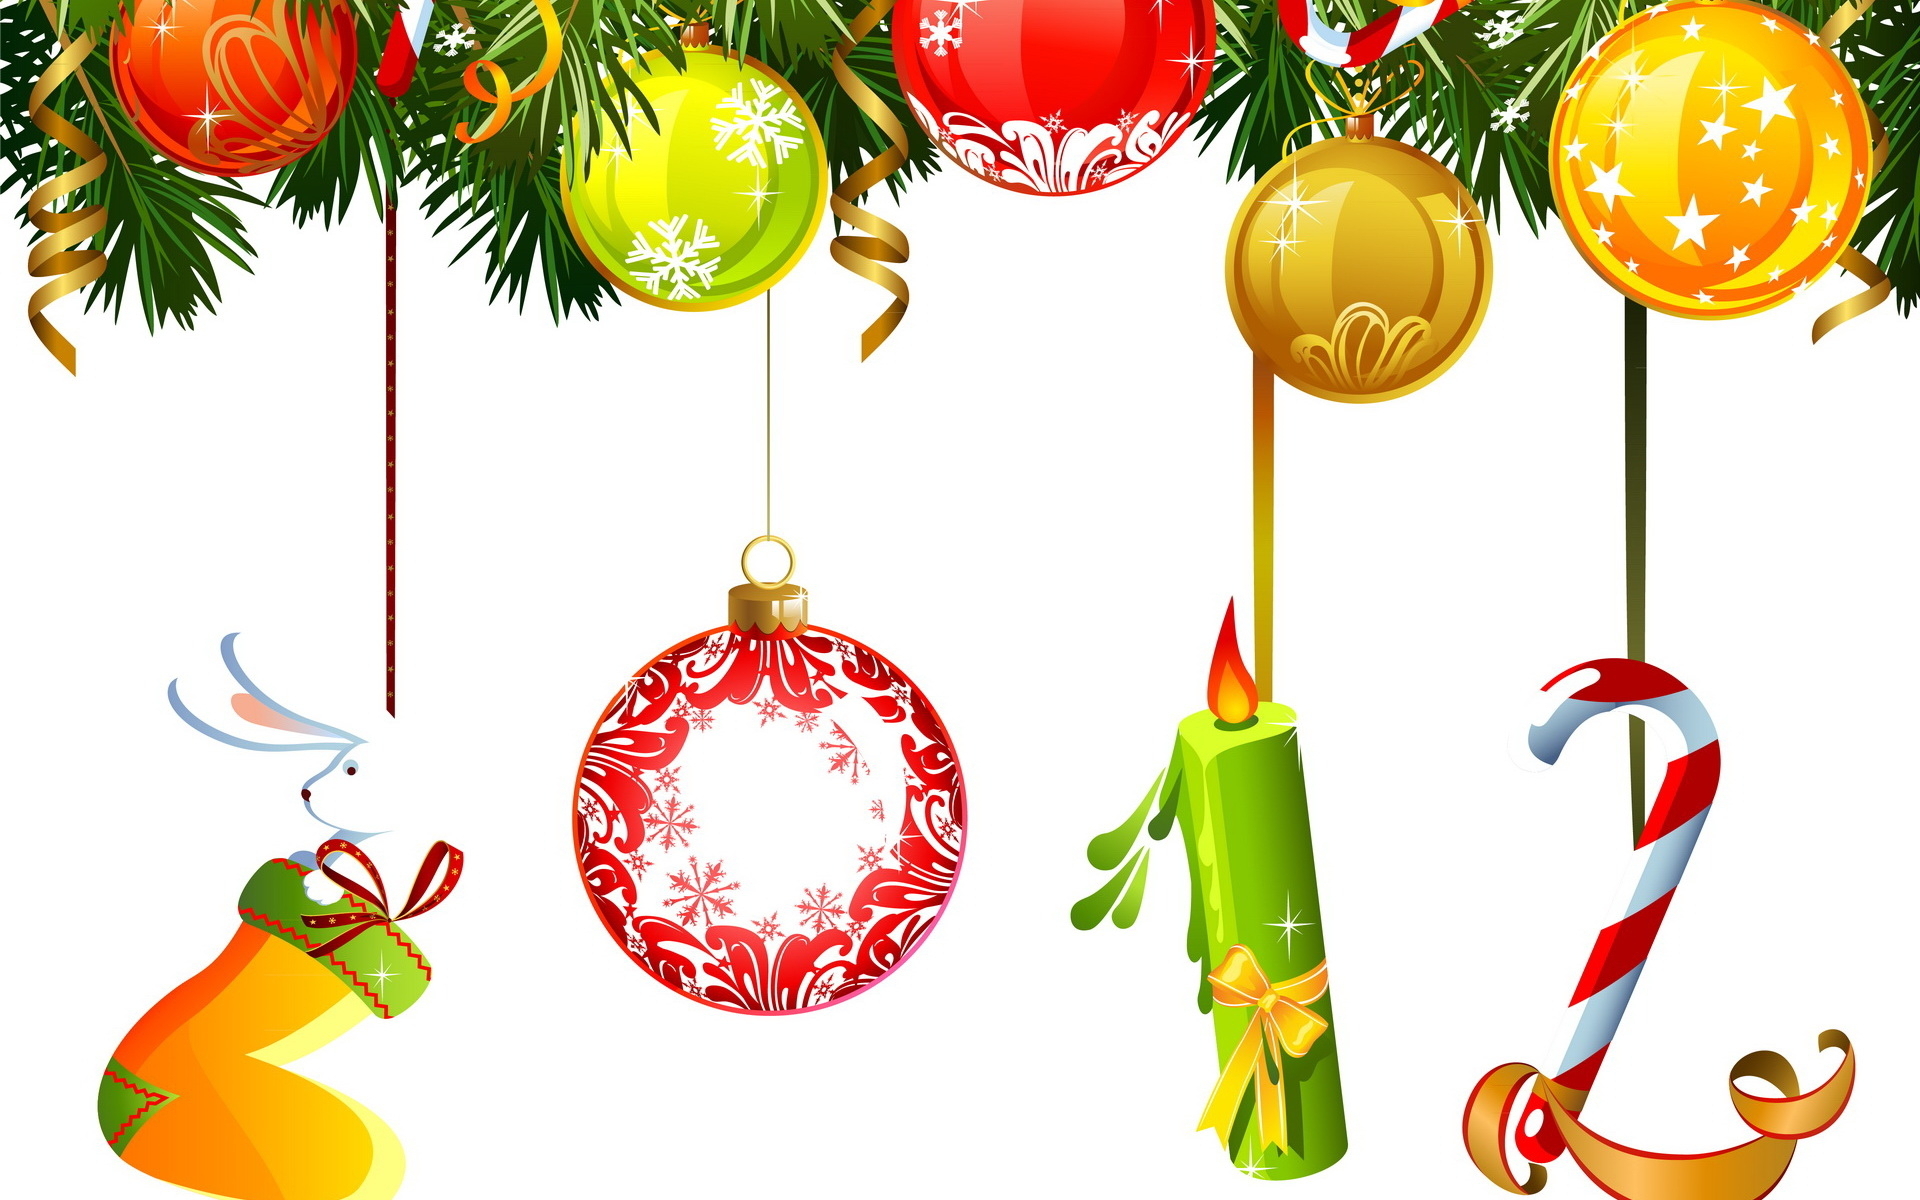 Descarga gratuita de fondo de pantalla para móvil de Adornos De Navidad, Navidad, Día Festivo.